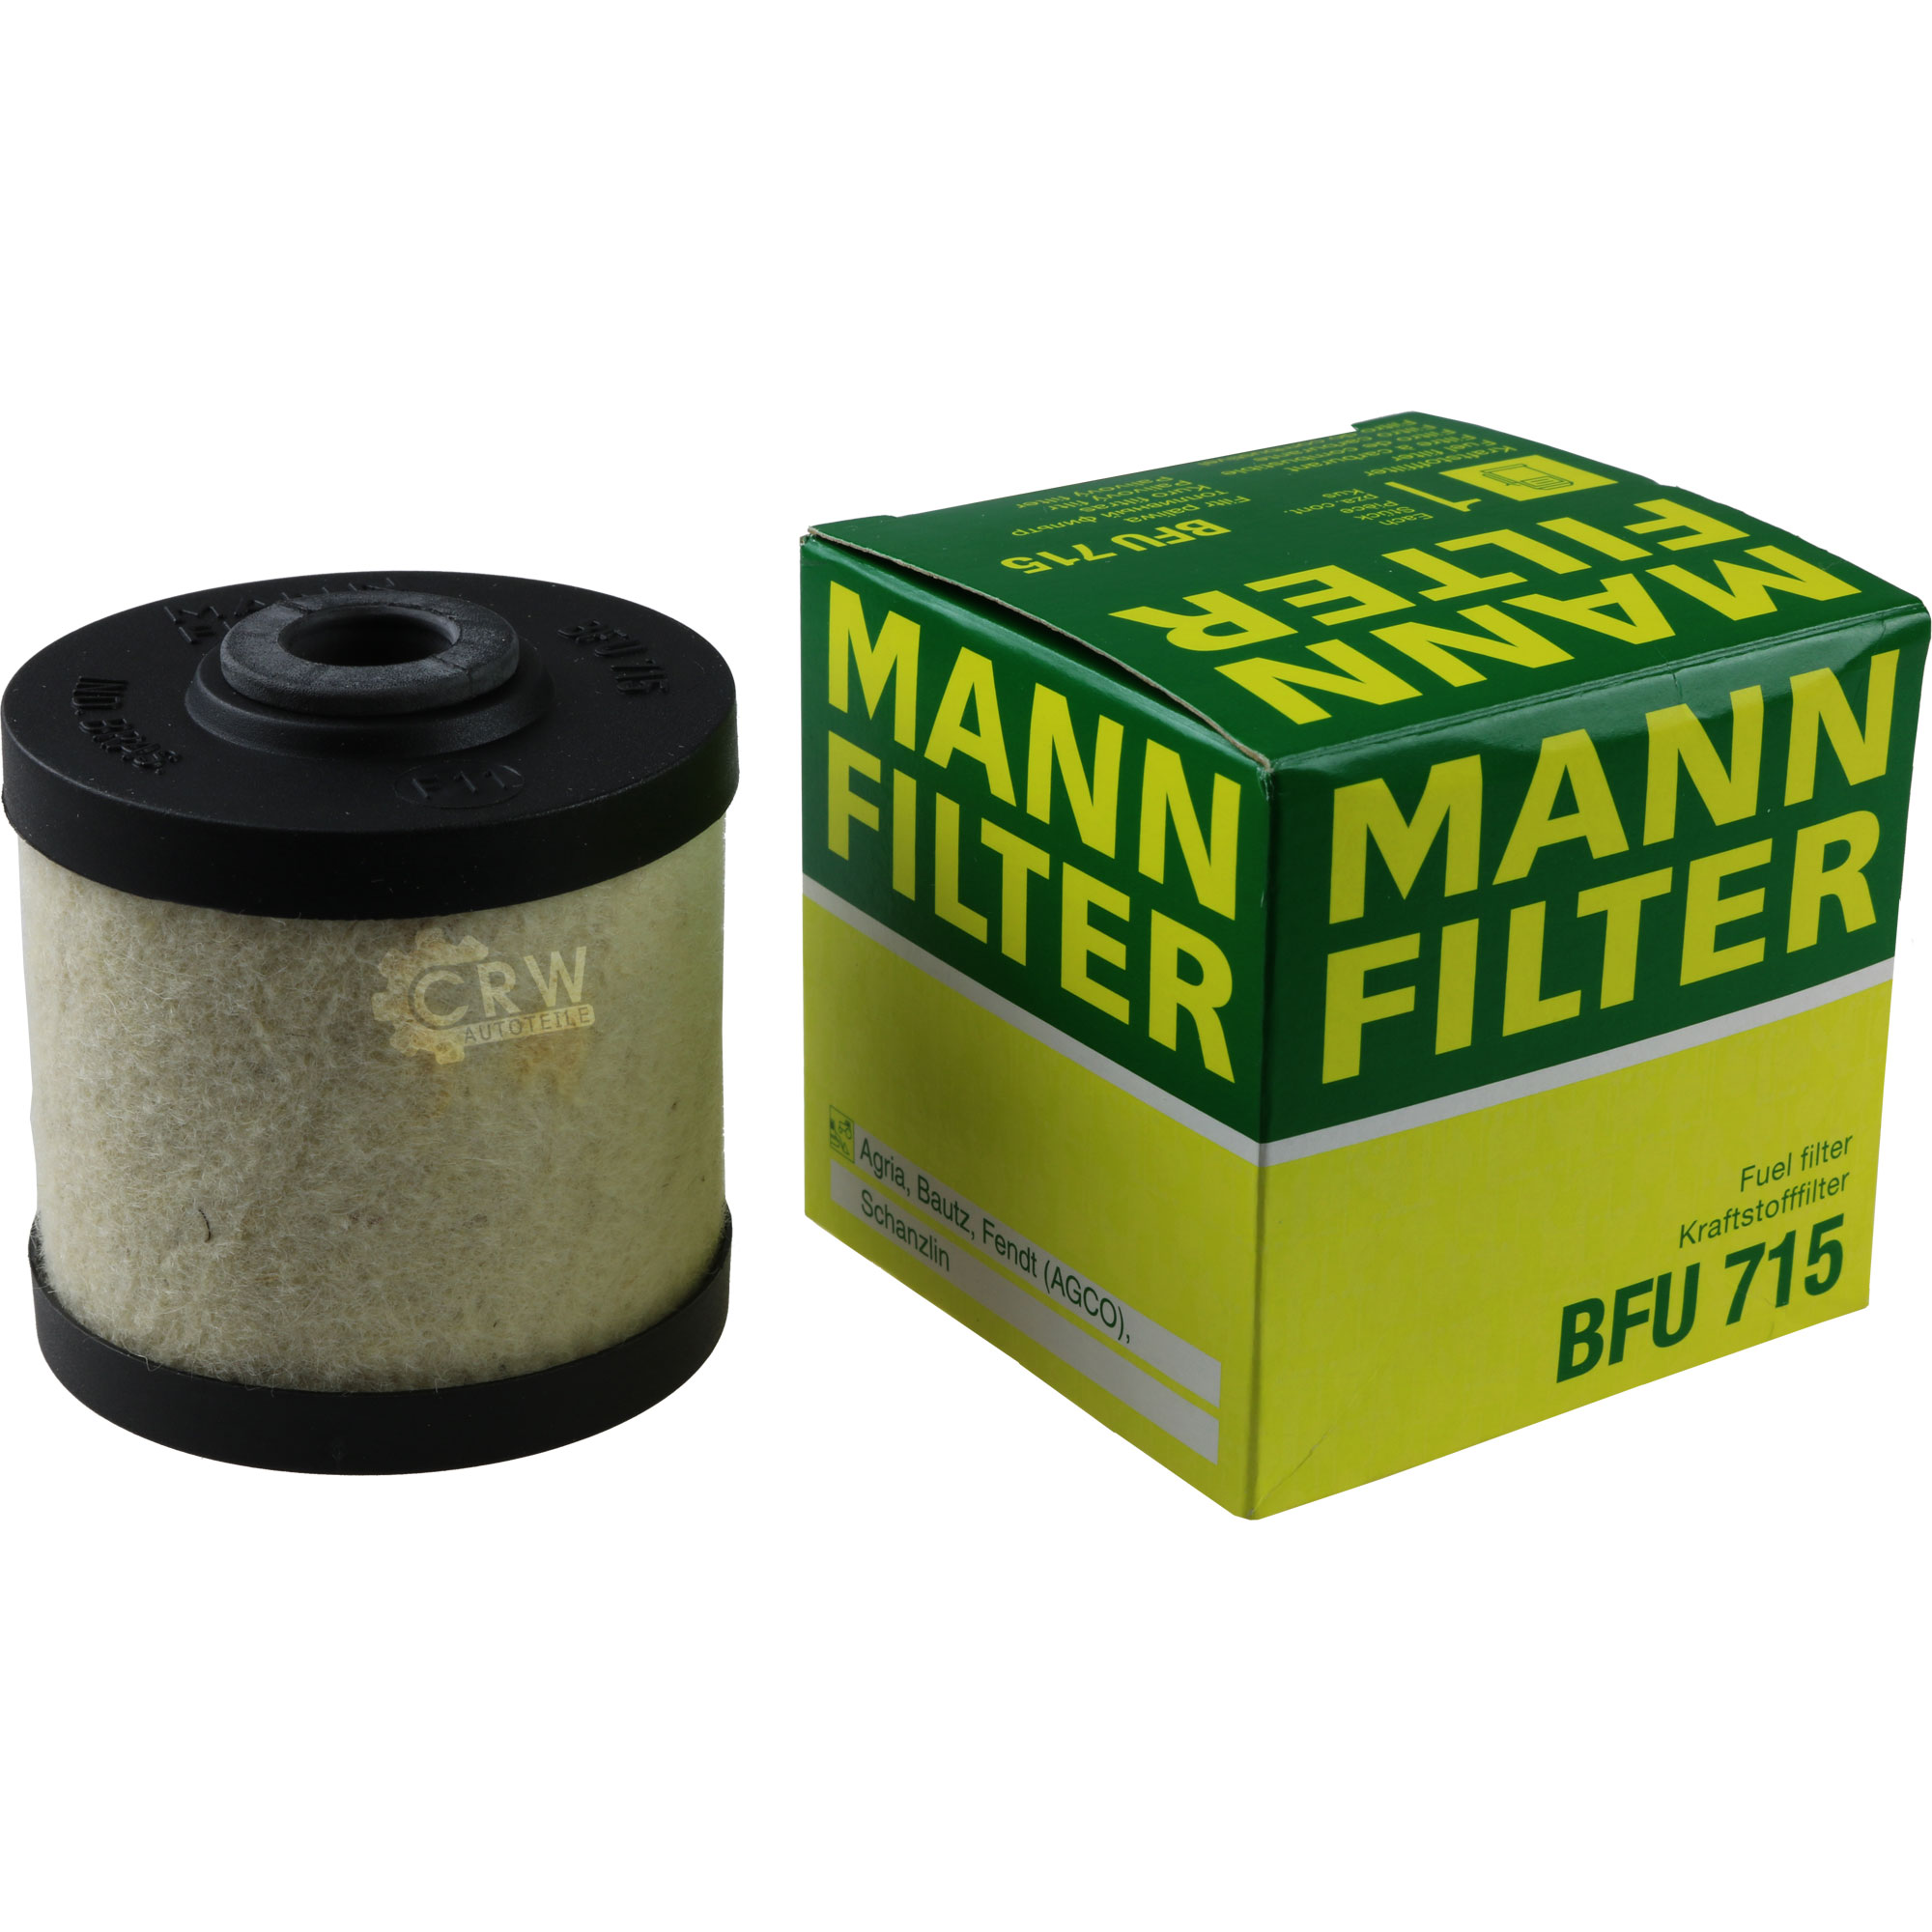 MANN Kraftstofffilter BFU 715 Fuel Filter